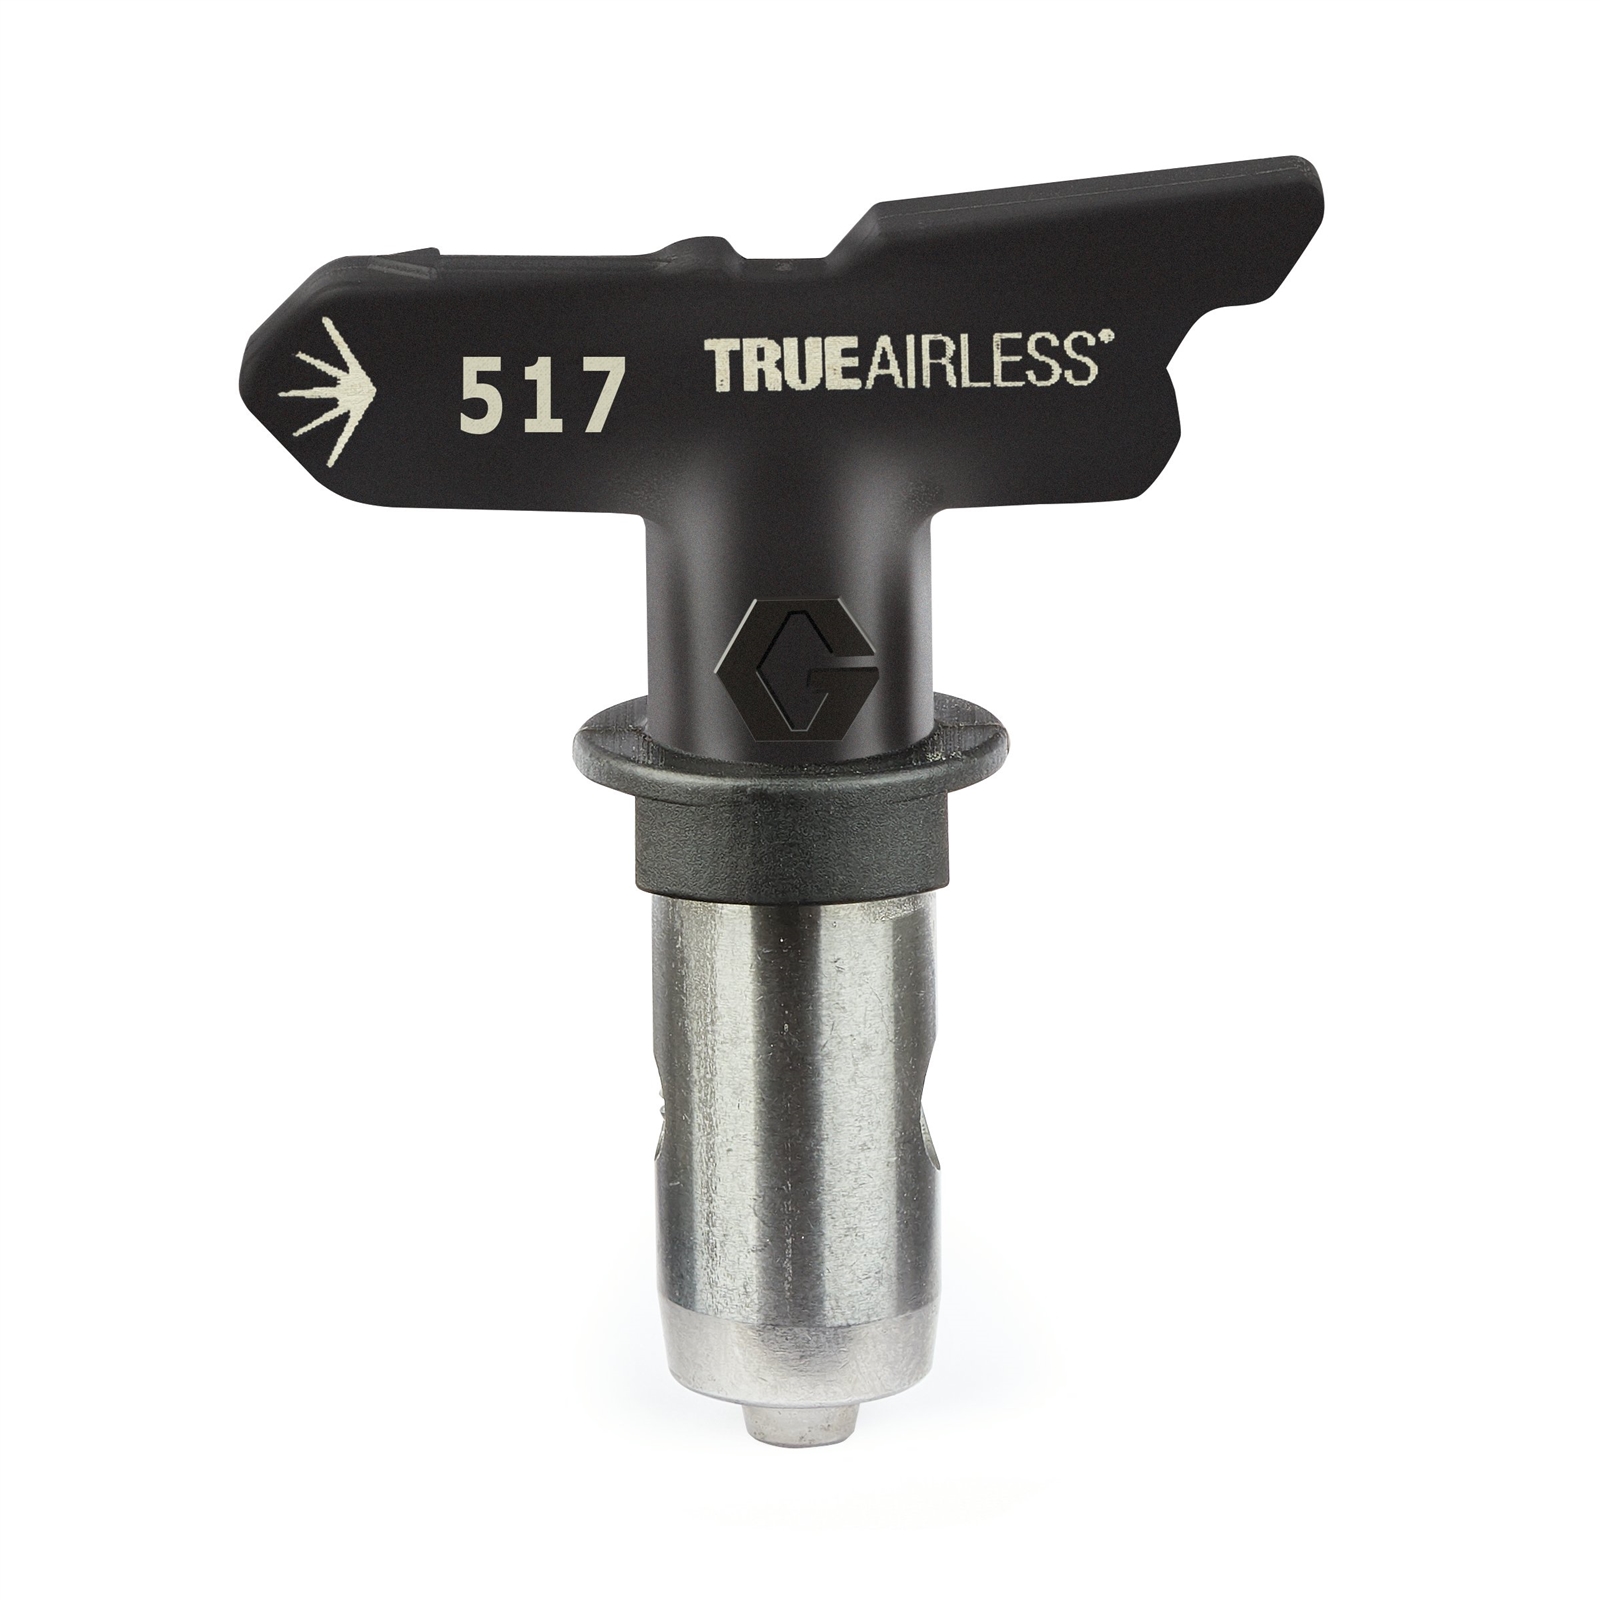 Airless spray gun accessories 517 nozzle and nozzle guard set